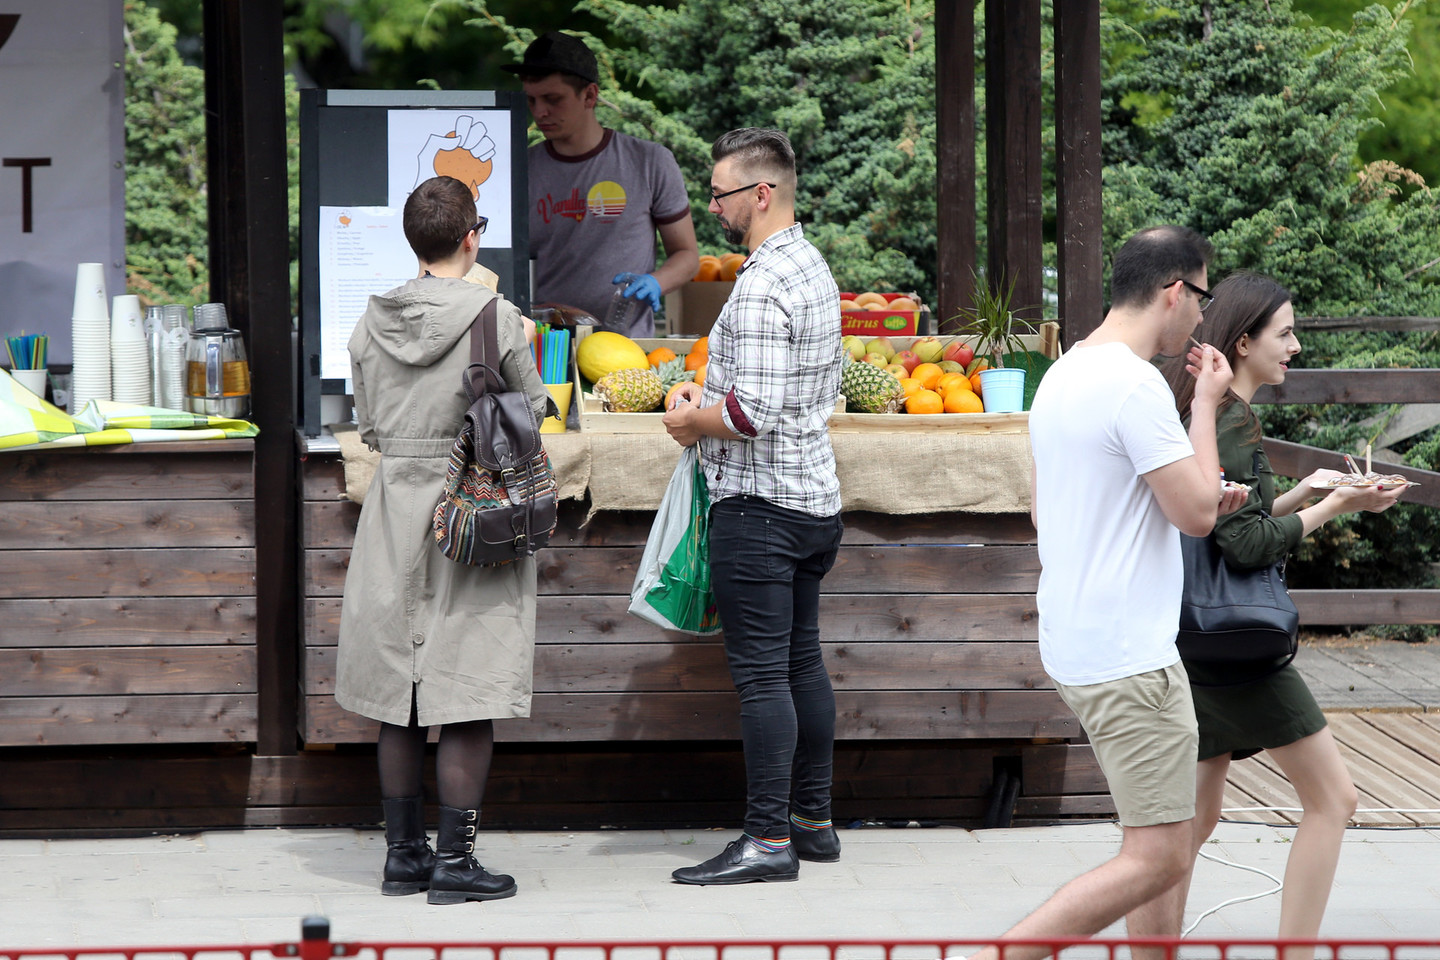 Vilniuje, kur kiekvieną penktadienį furgonėlis maitina pietautojus „Open Kitchen“ erdvėje, kortele atsiskaito maždaug pusė visų klientų.<br>R.Danisevičiaus nuotr.